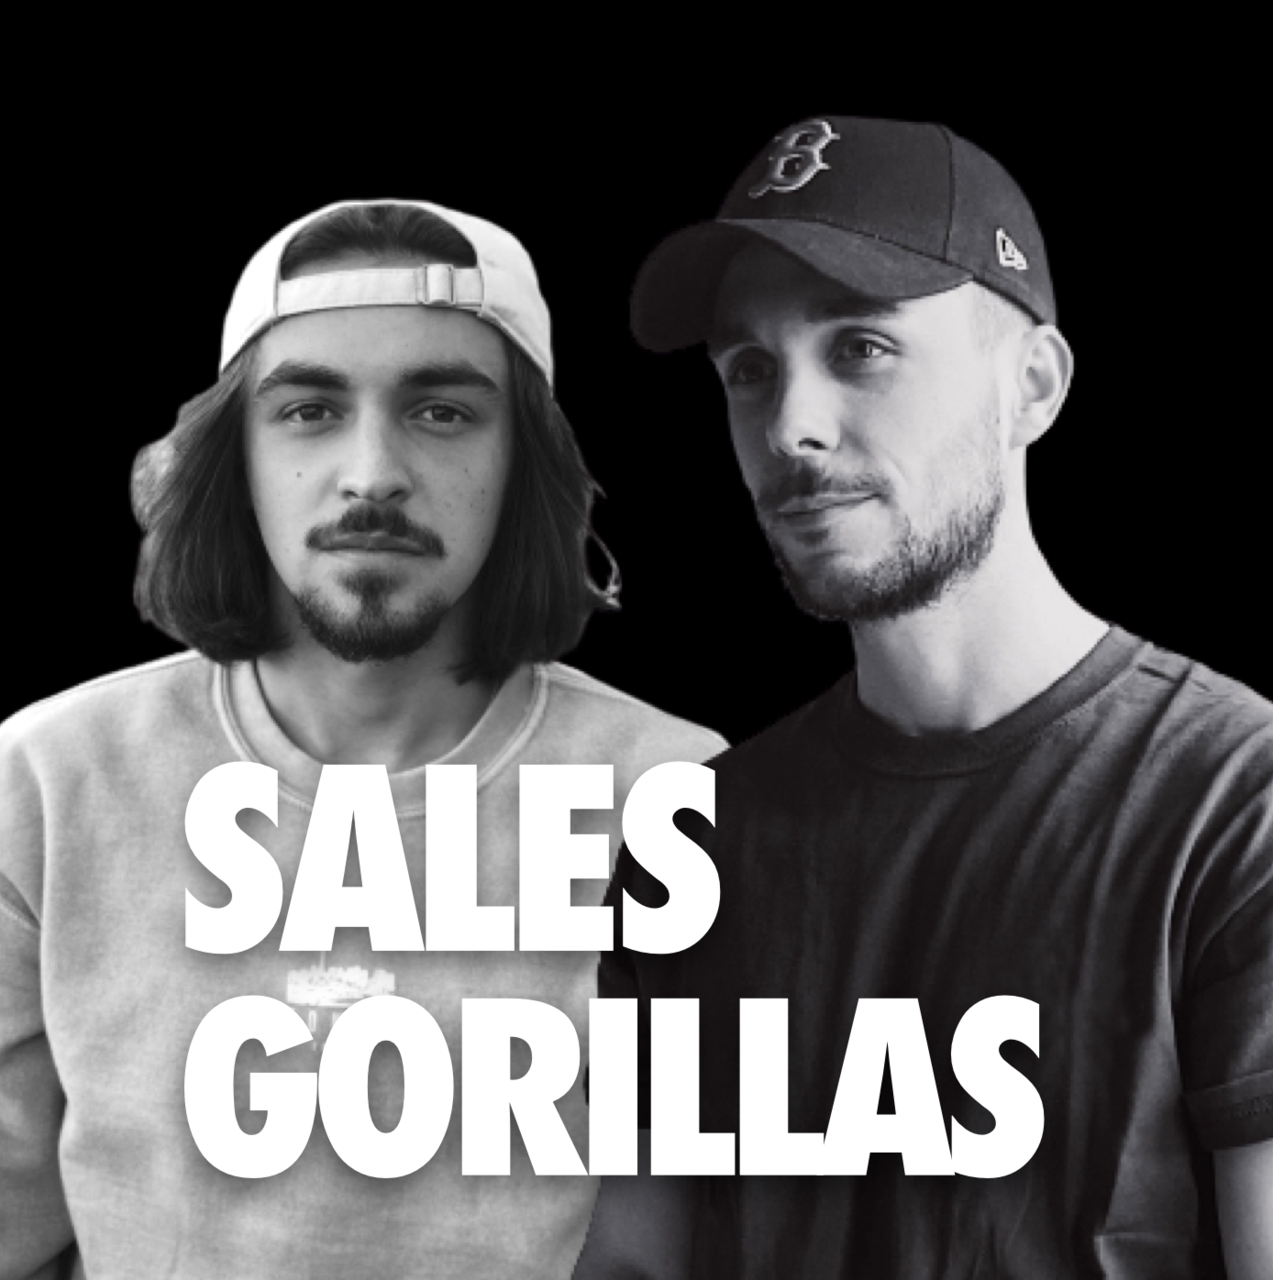 Sales Gorillas